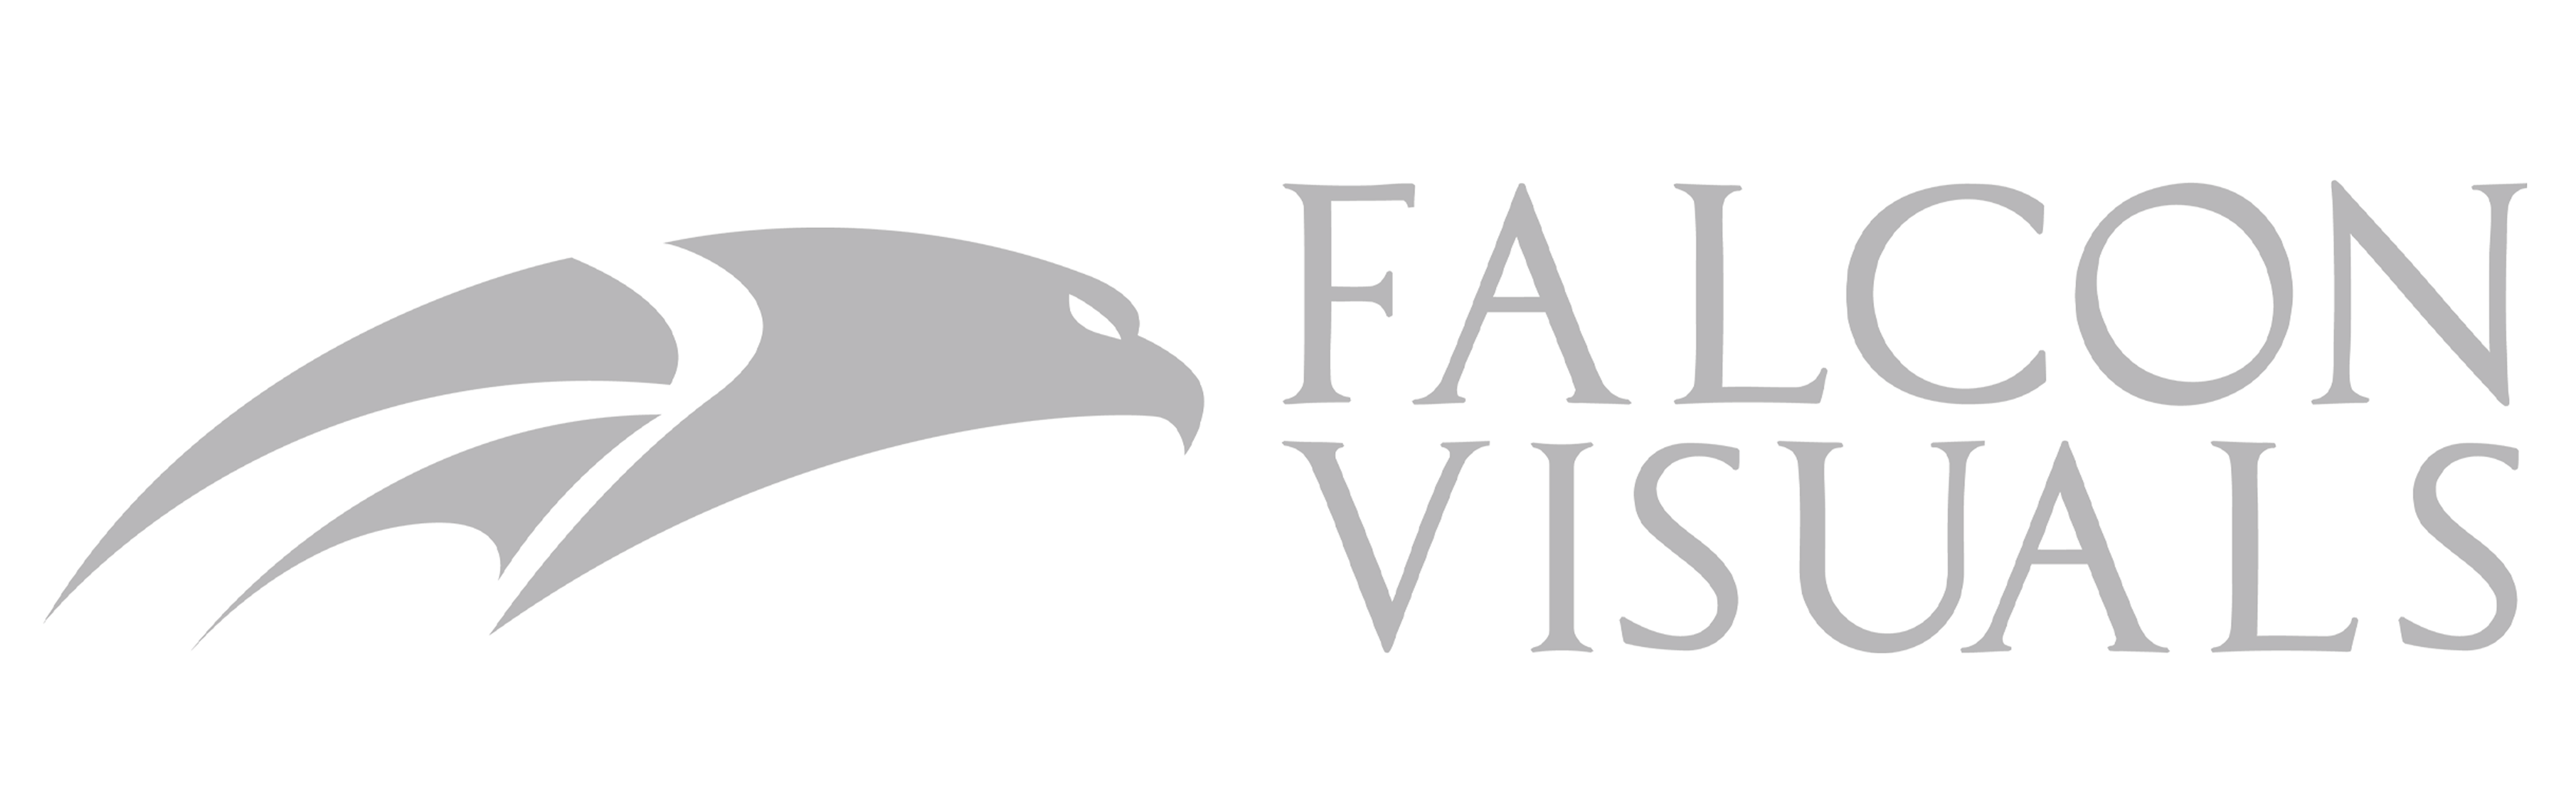 Falcon Visuals